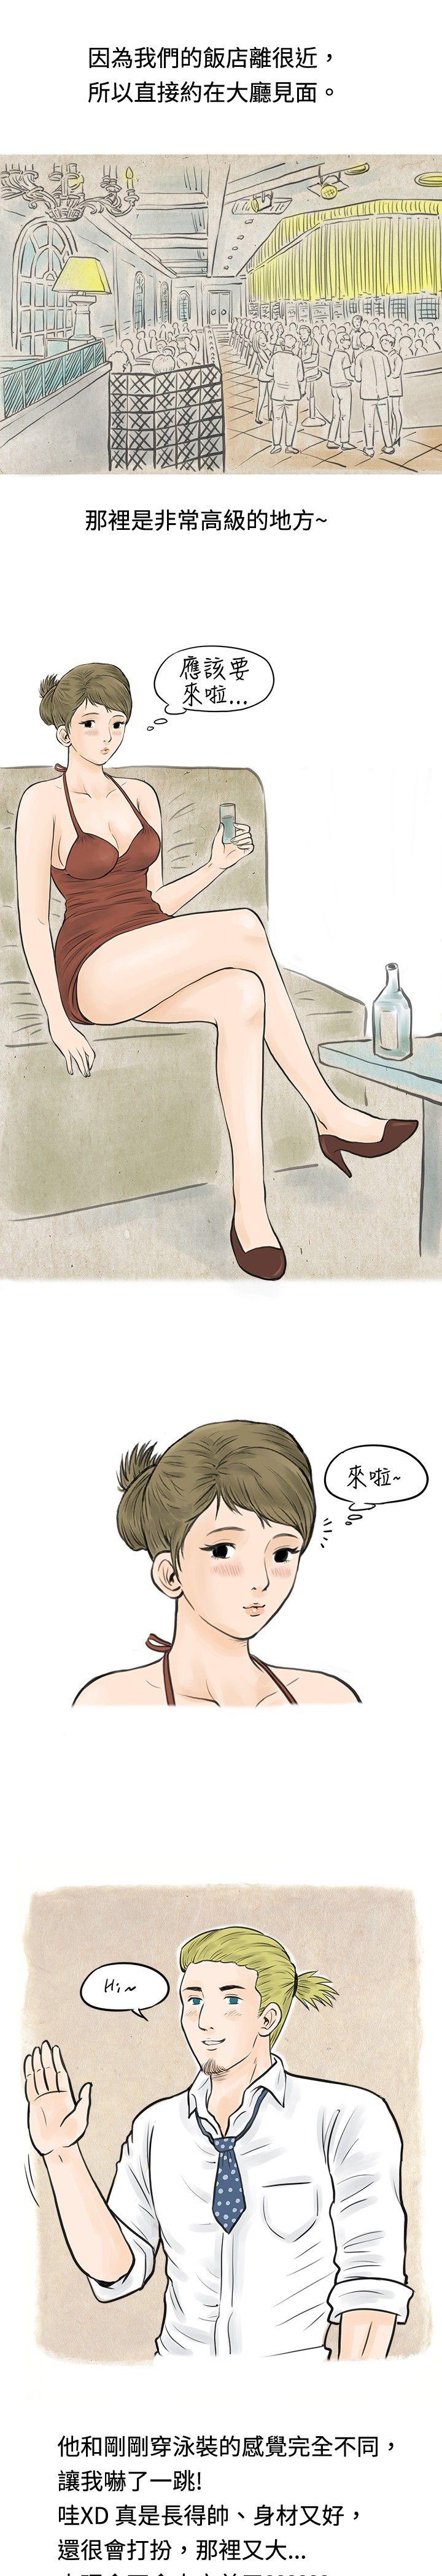 韩国污漫画 秘密Story 在梨泰院游泳池中的小故事(下) 5